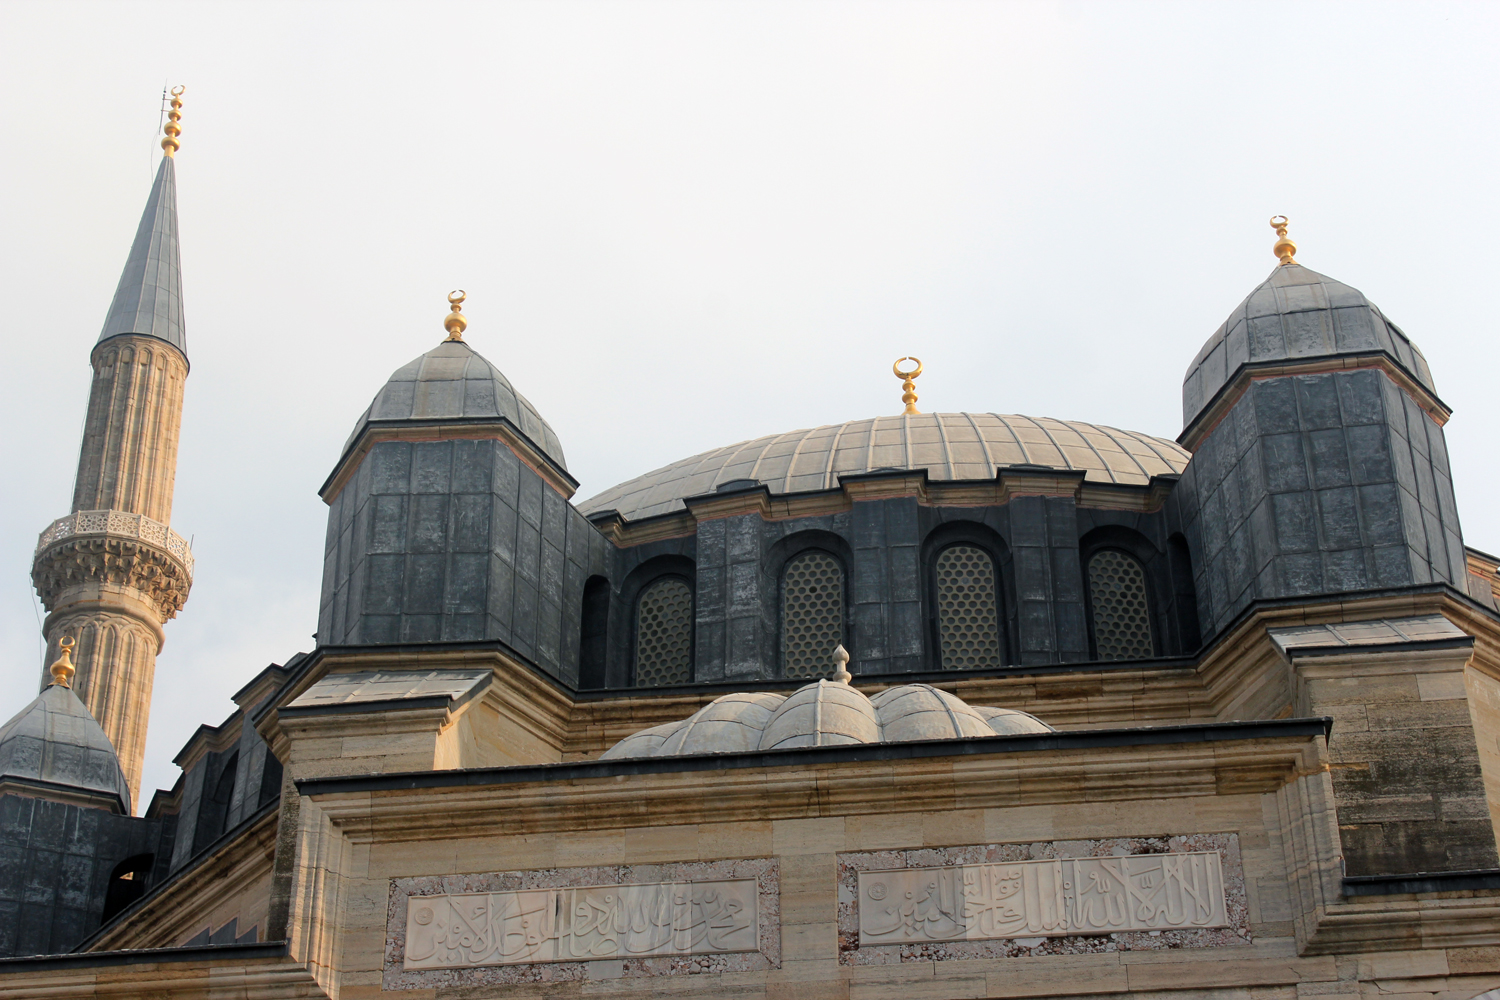 Ο ίδιος ο Mimar Sinan, ο σπουδαιότερος αρχιτέκτονας της Οθωμανικής αυτοκρατορίας, έχει χαρακτηρίσει το Selimiye τζαμί ως το σπουδαιότερο έργο του.